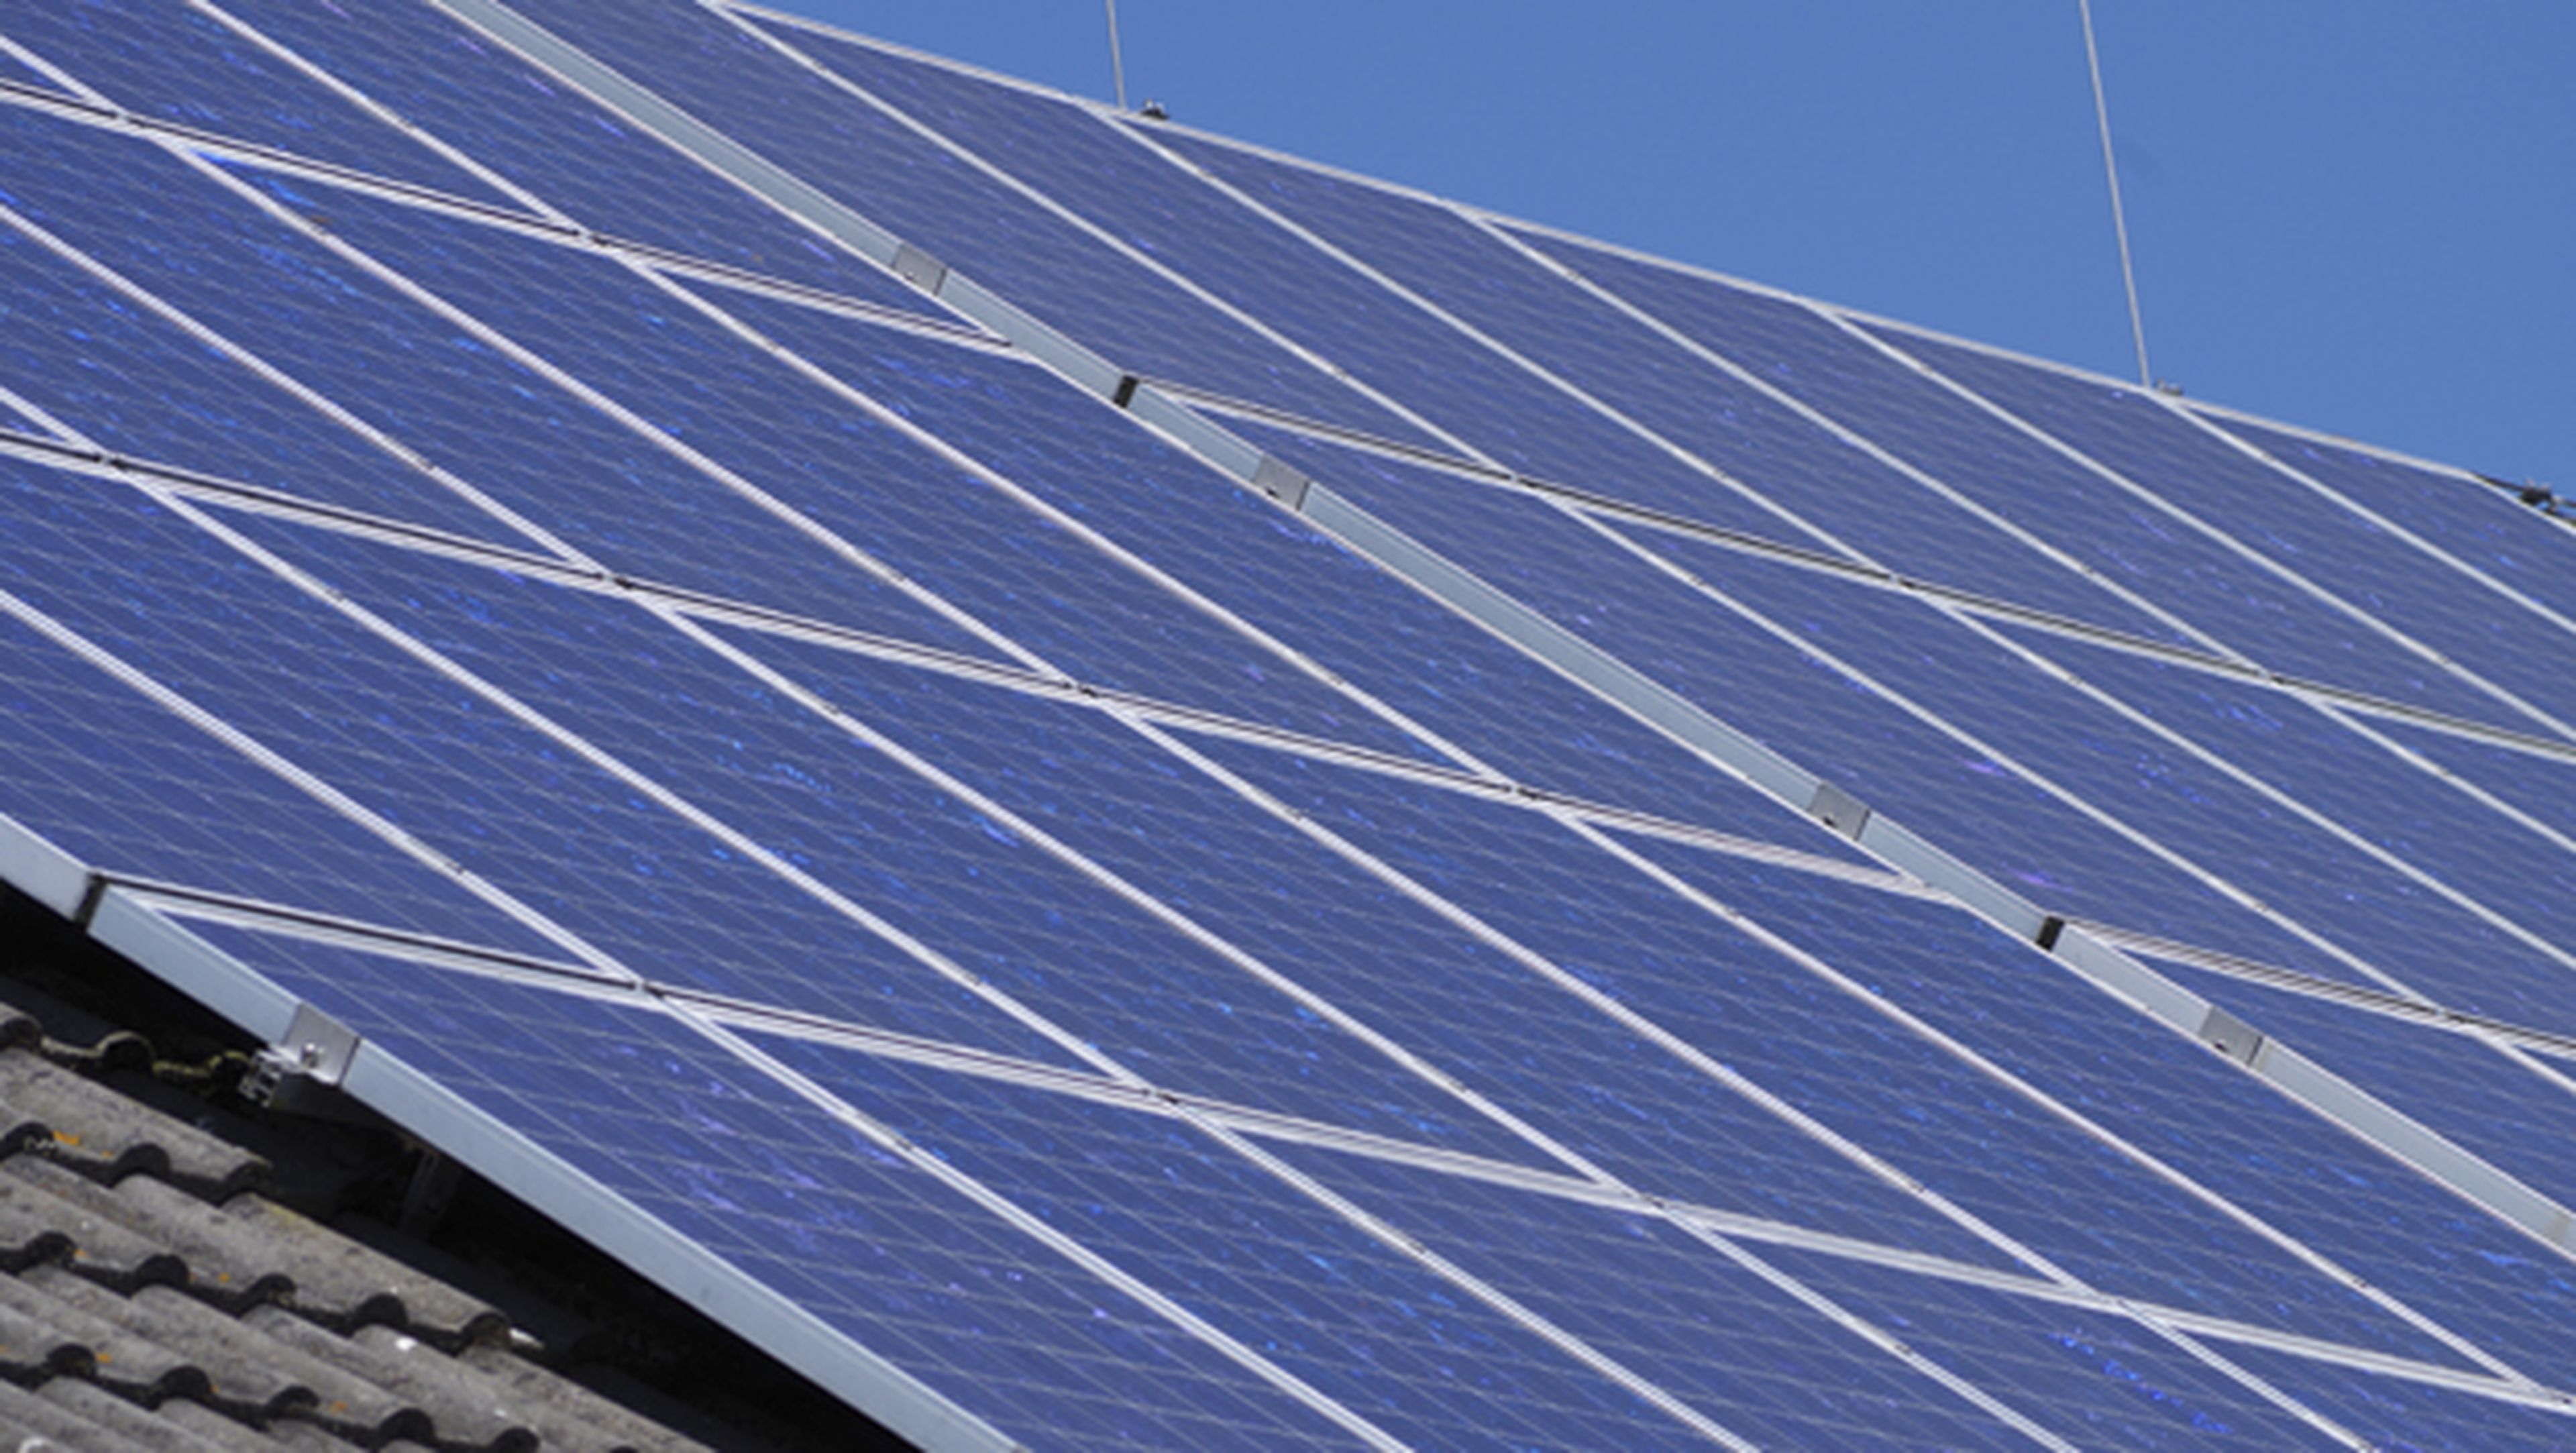 Familias pobres de California tendrán paneles solares gratis